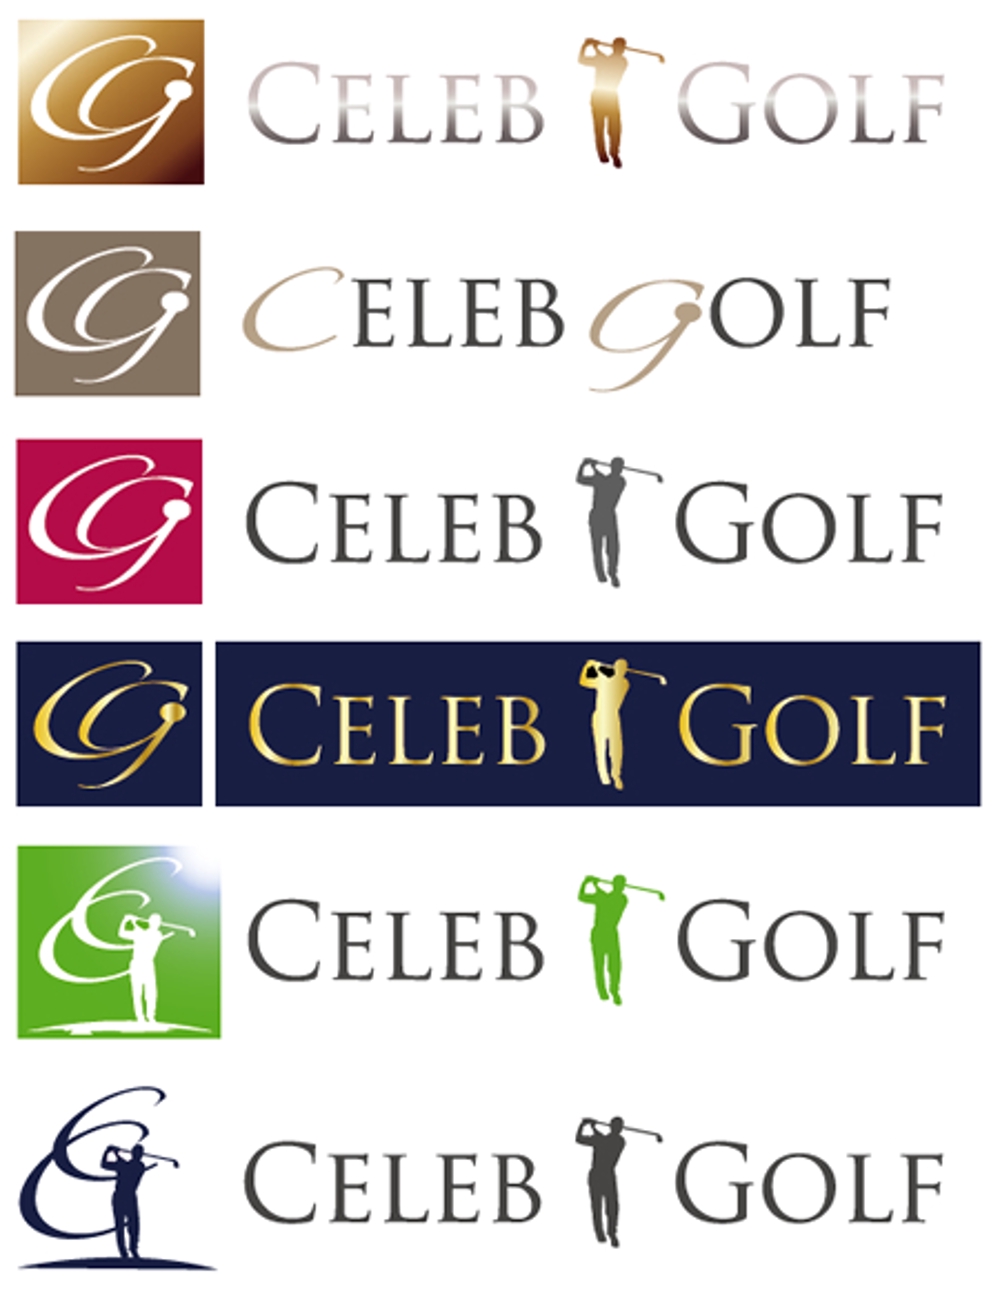 新規ゴルフサークルのロゴ制作